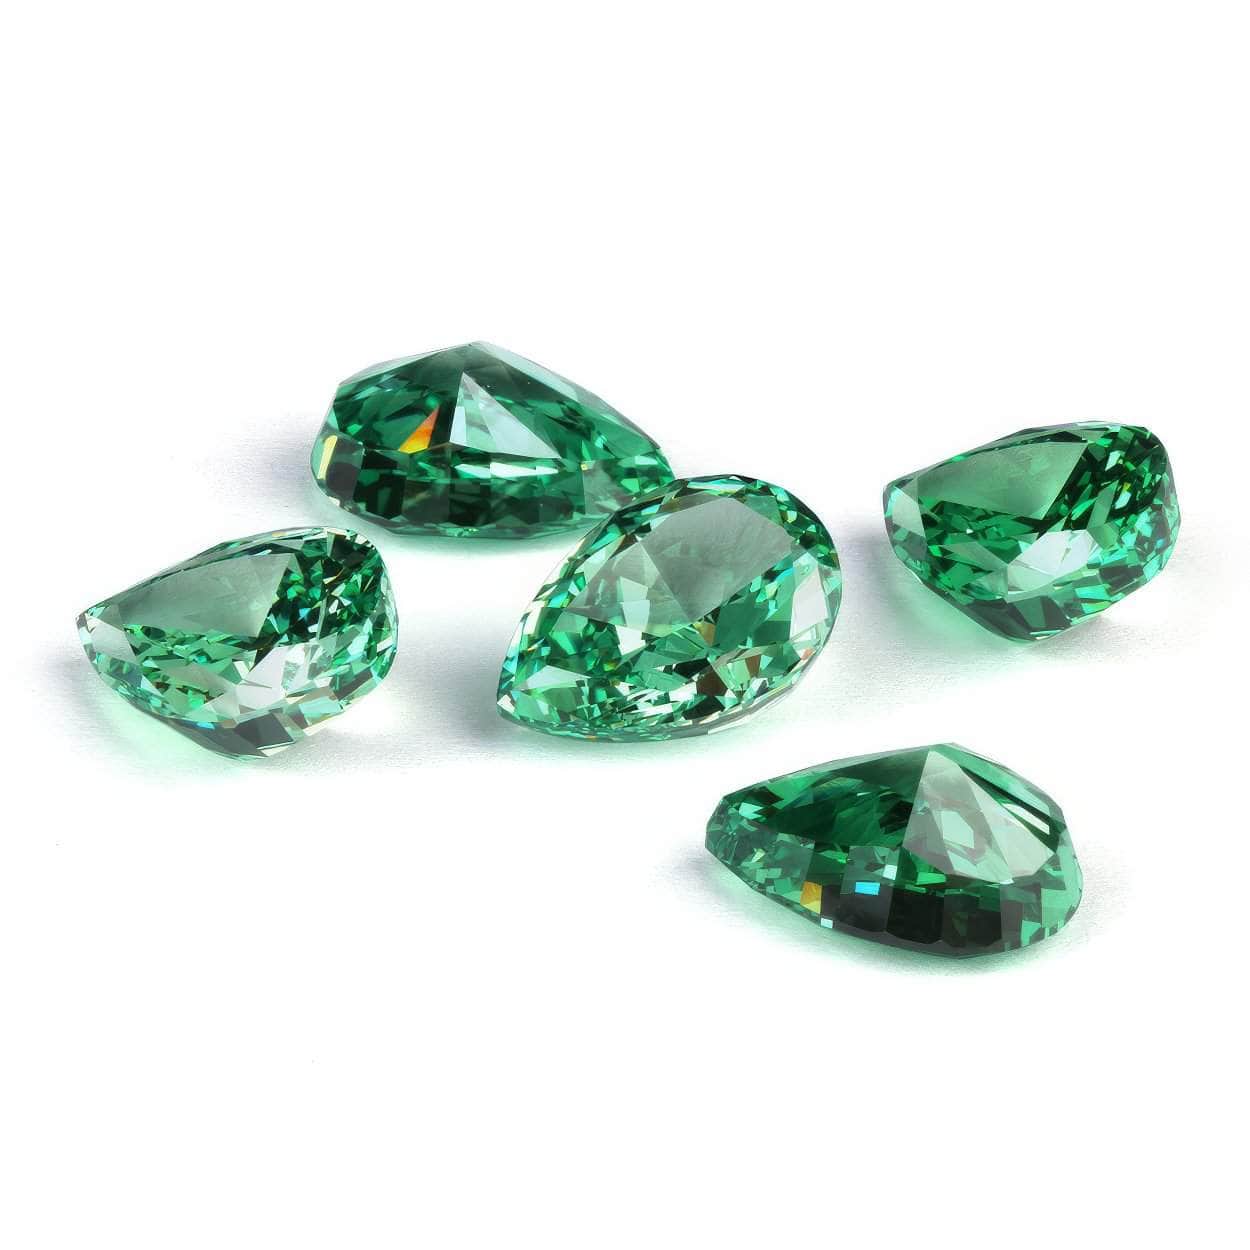 3 Set Of Emerald Pear-Cut Lab-Grown Diamond Gemstone 3*5mm / Emerald / Pear